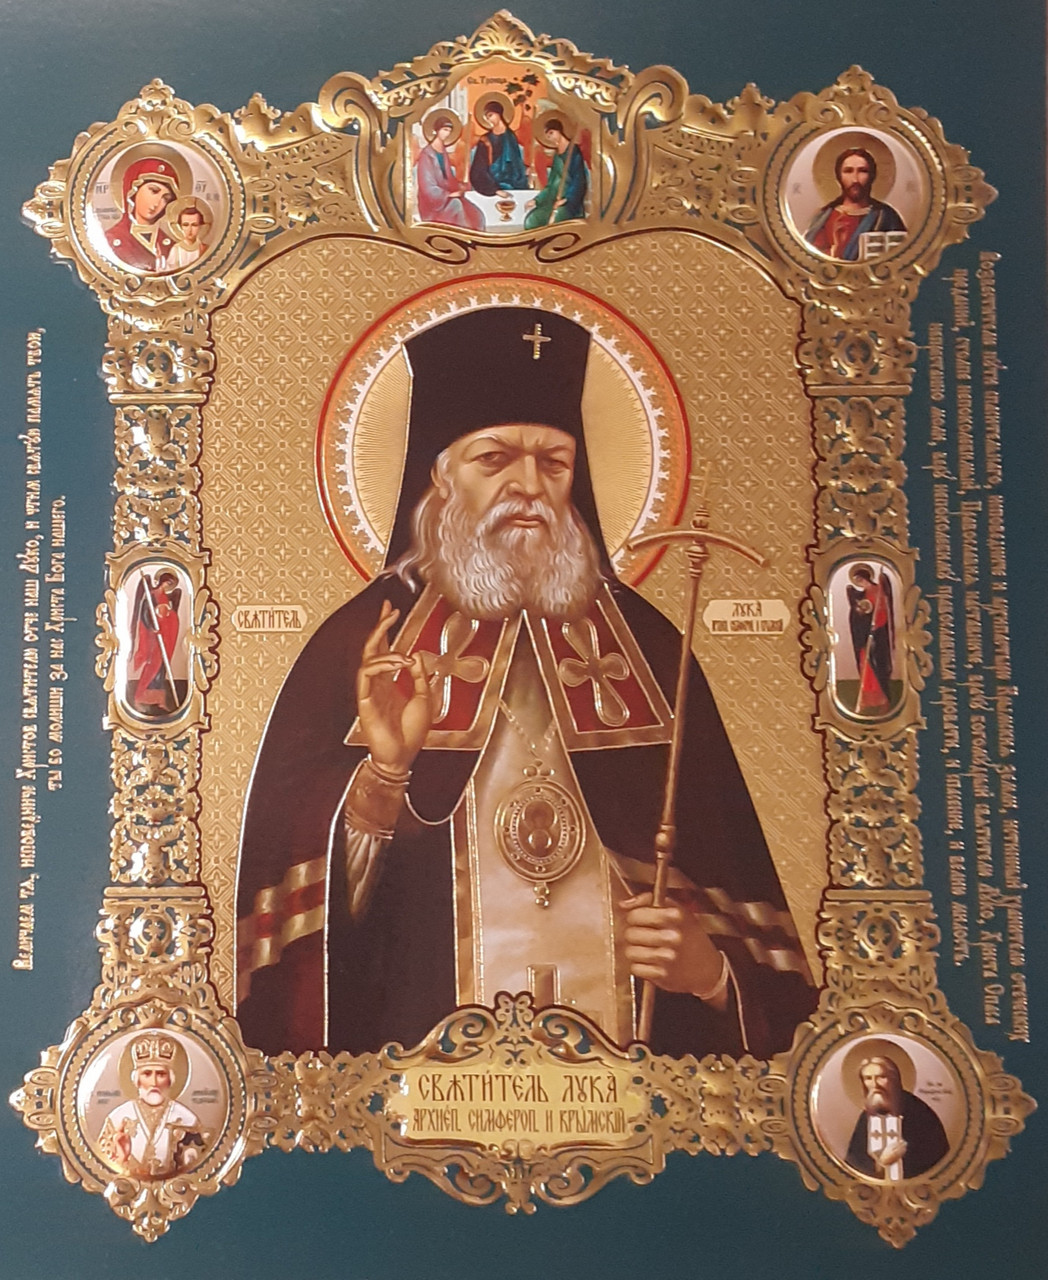 Лик архієпископ Сімферопольський і Кримський Лука 15х18, конгрев